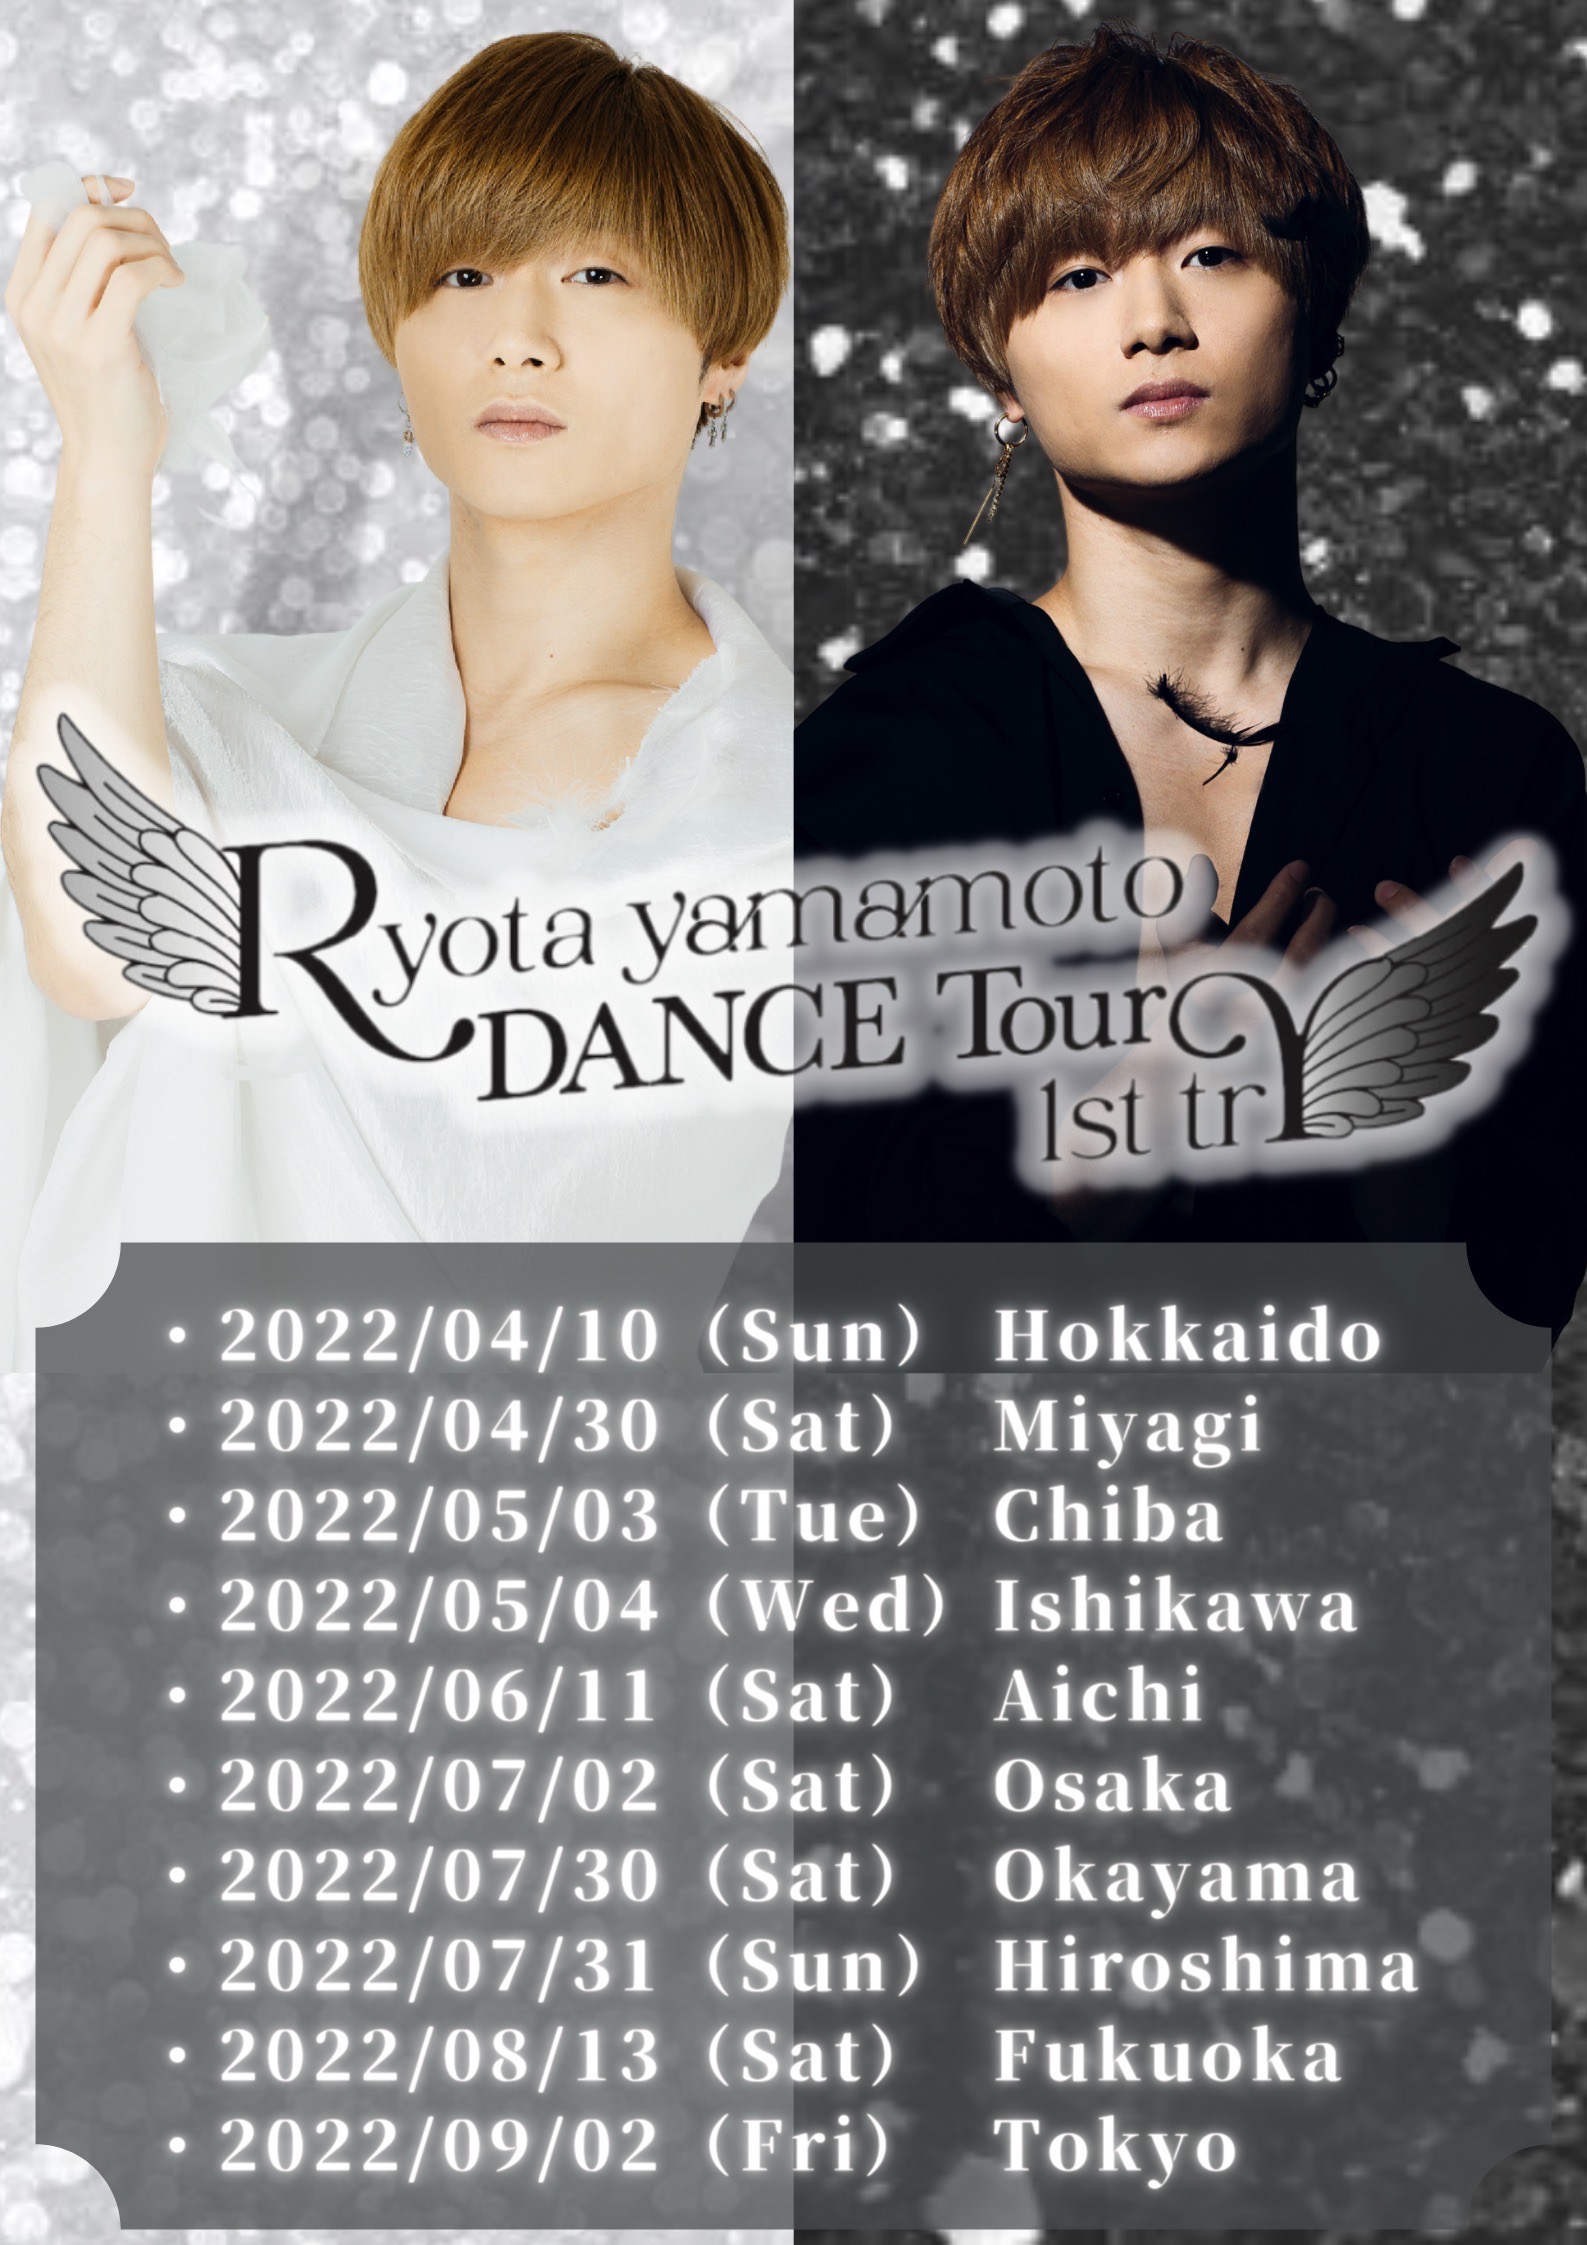 【一般先着発売】山本亮太 全国ダンスツアー  『Ryota yamamoto DANCE Tour 1st trY 』